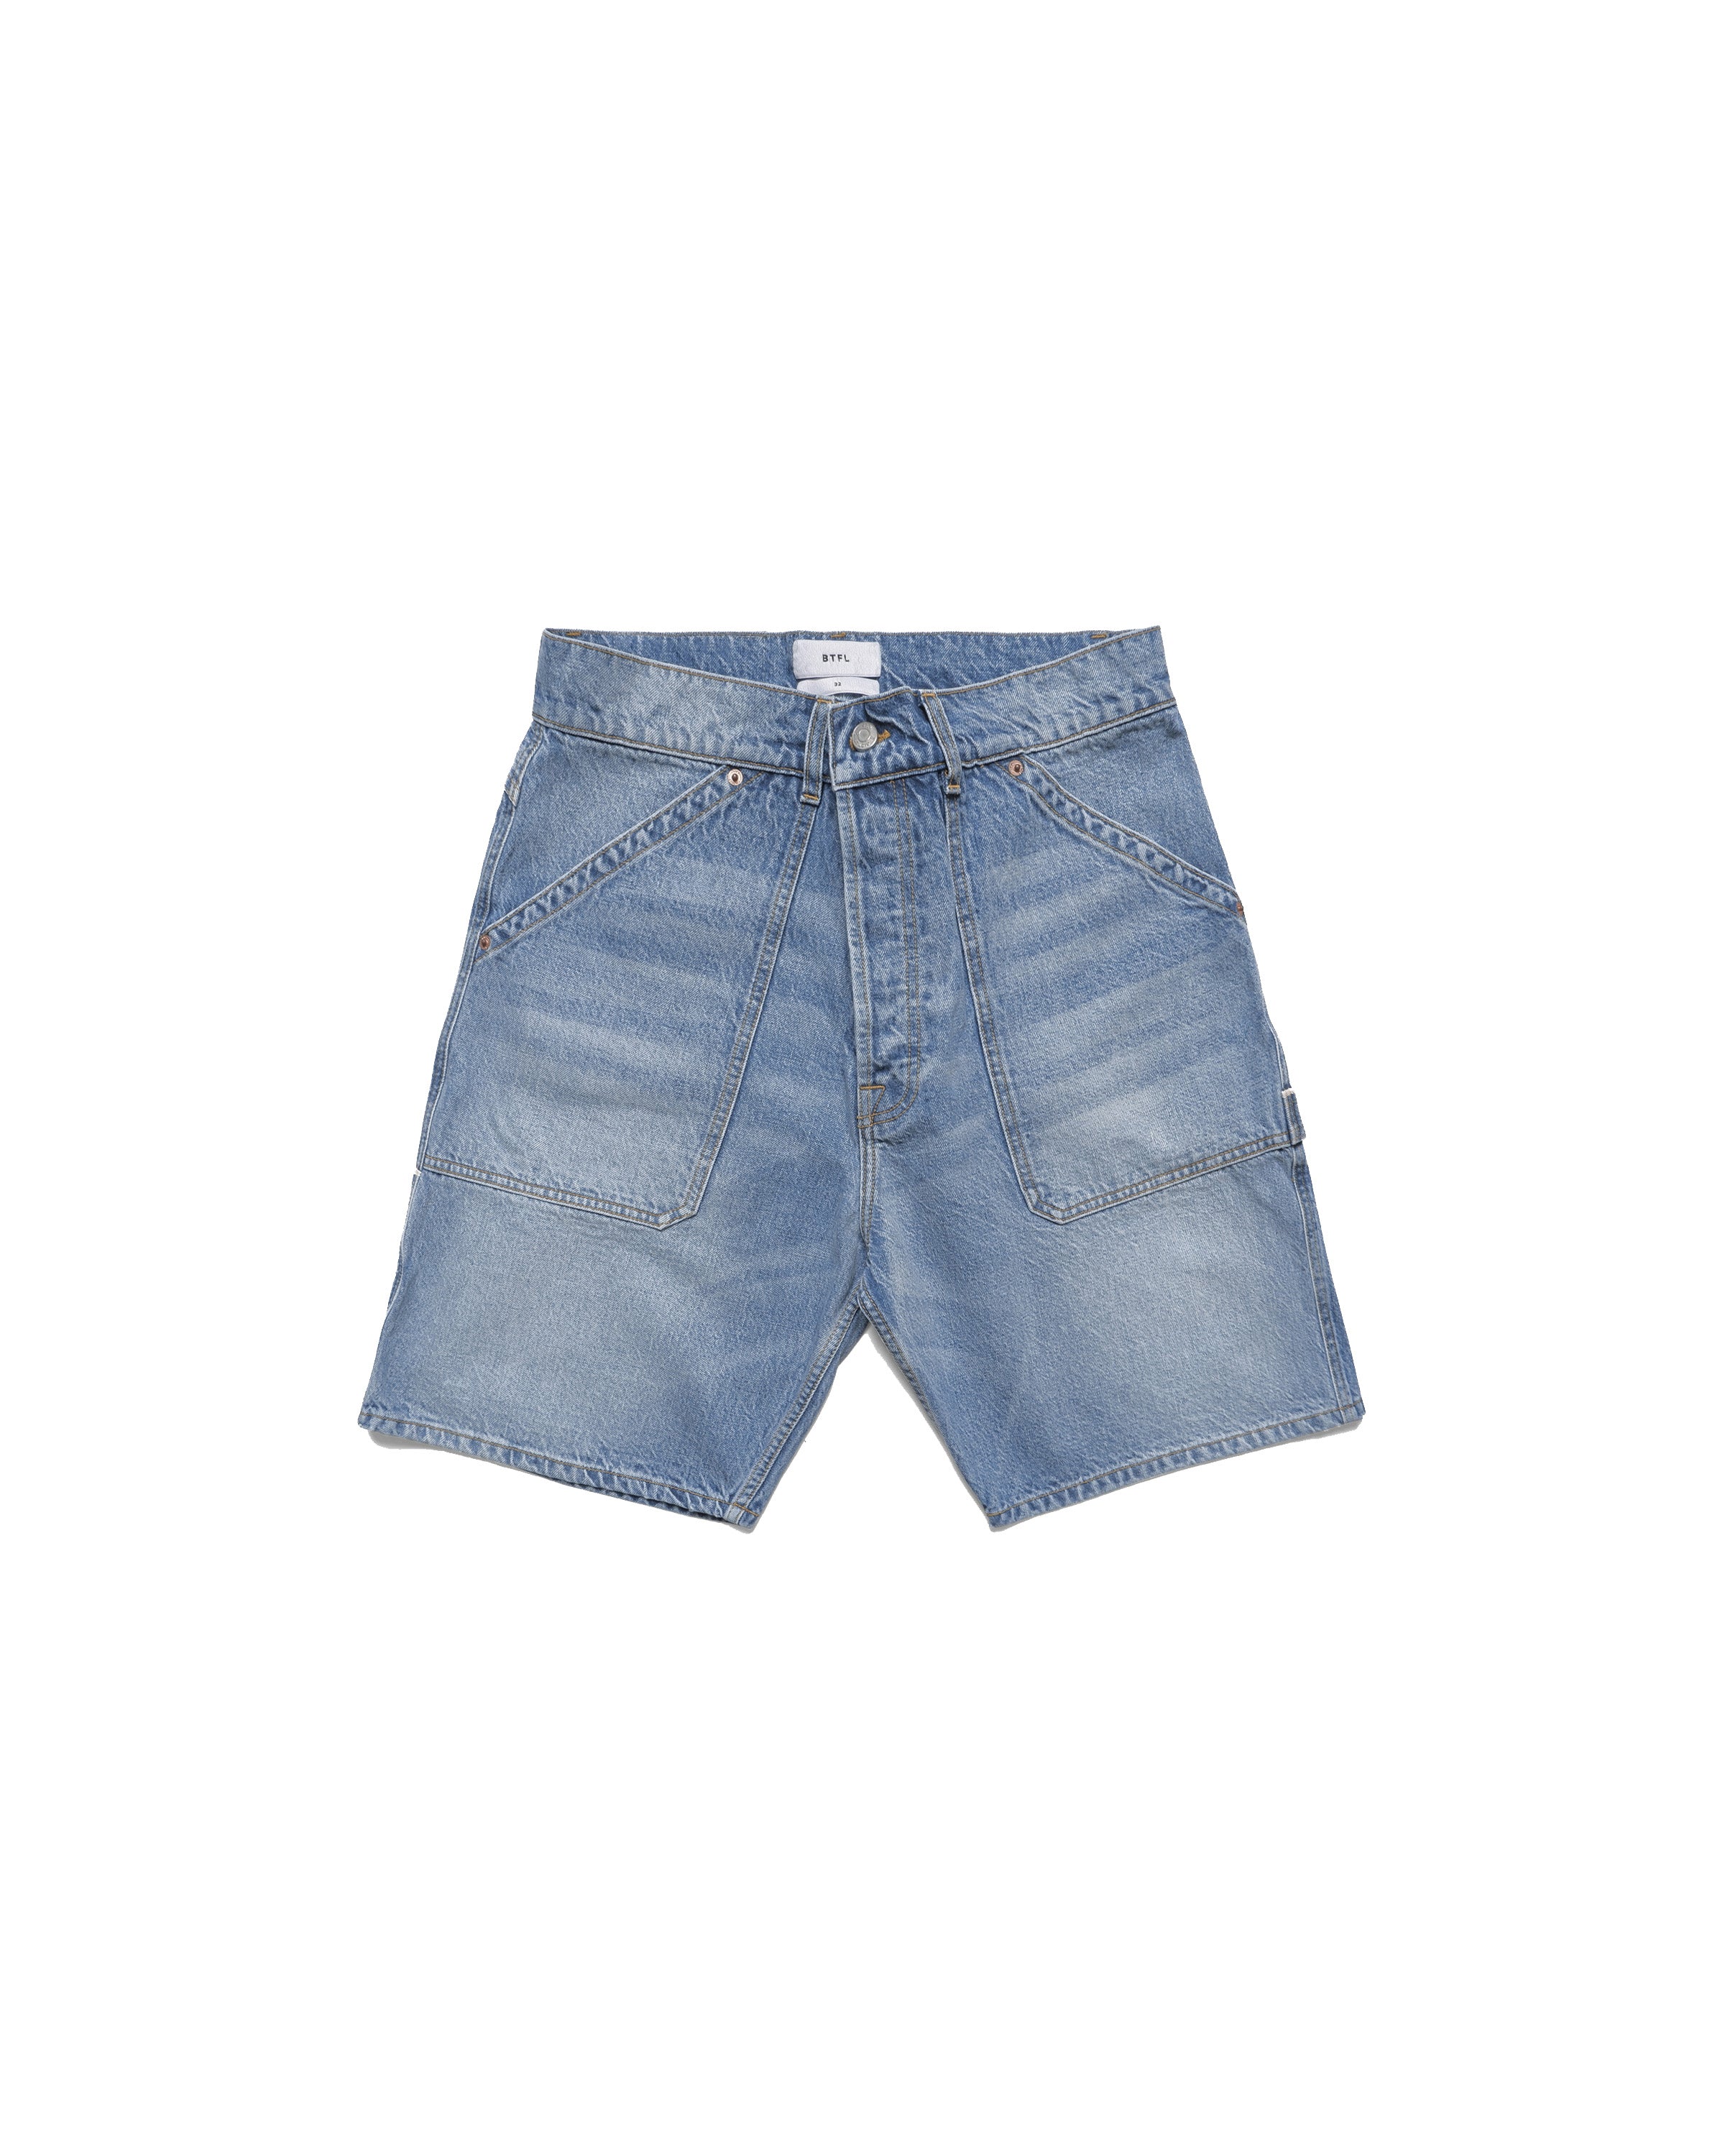 Carpenter Shorts - Indigo Wash